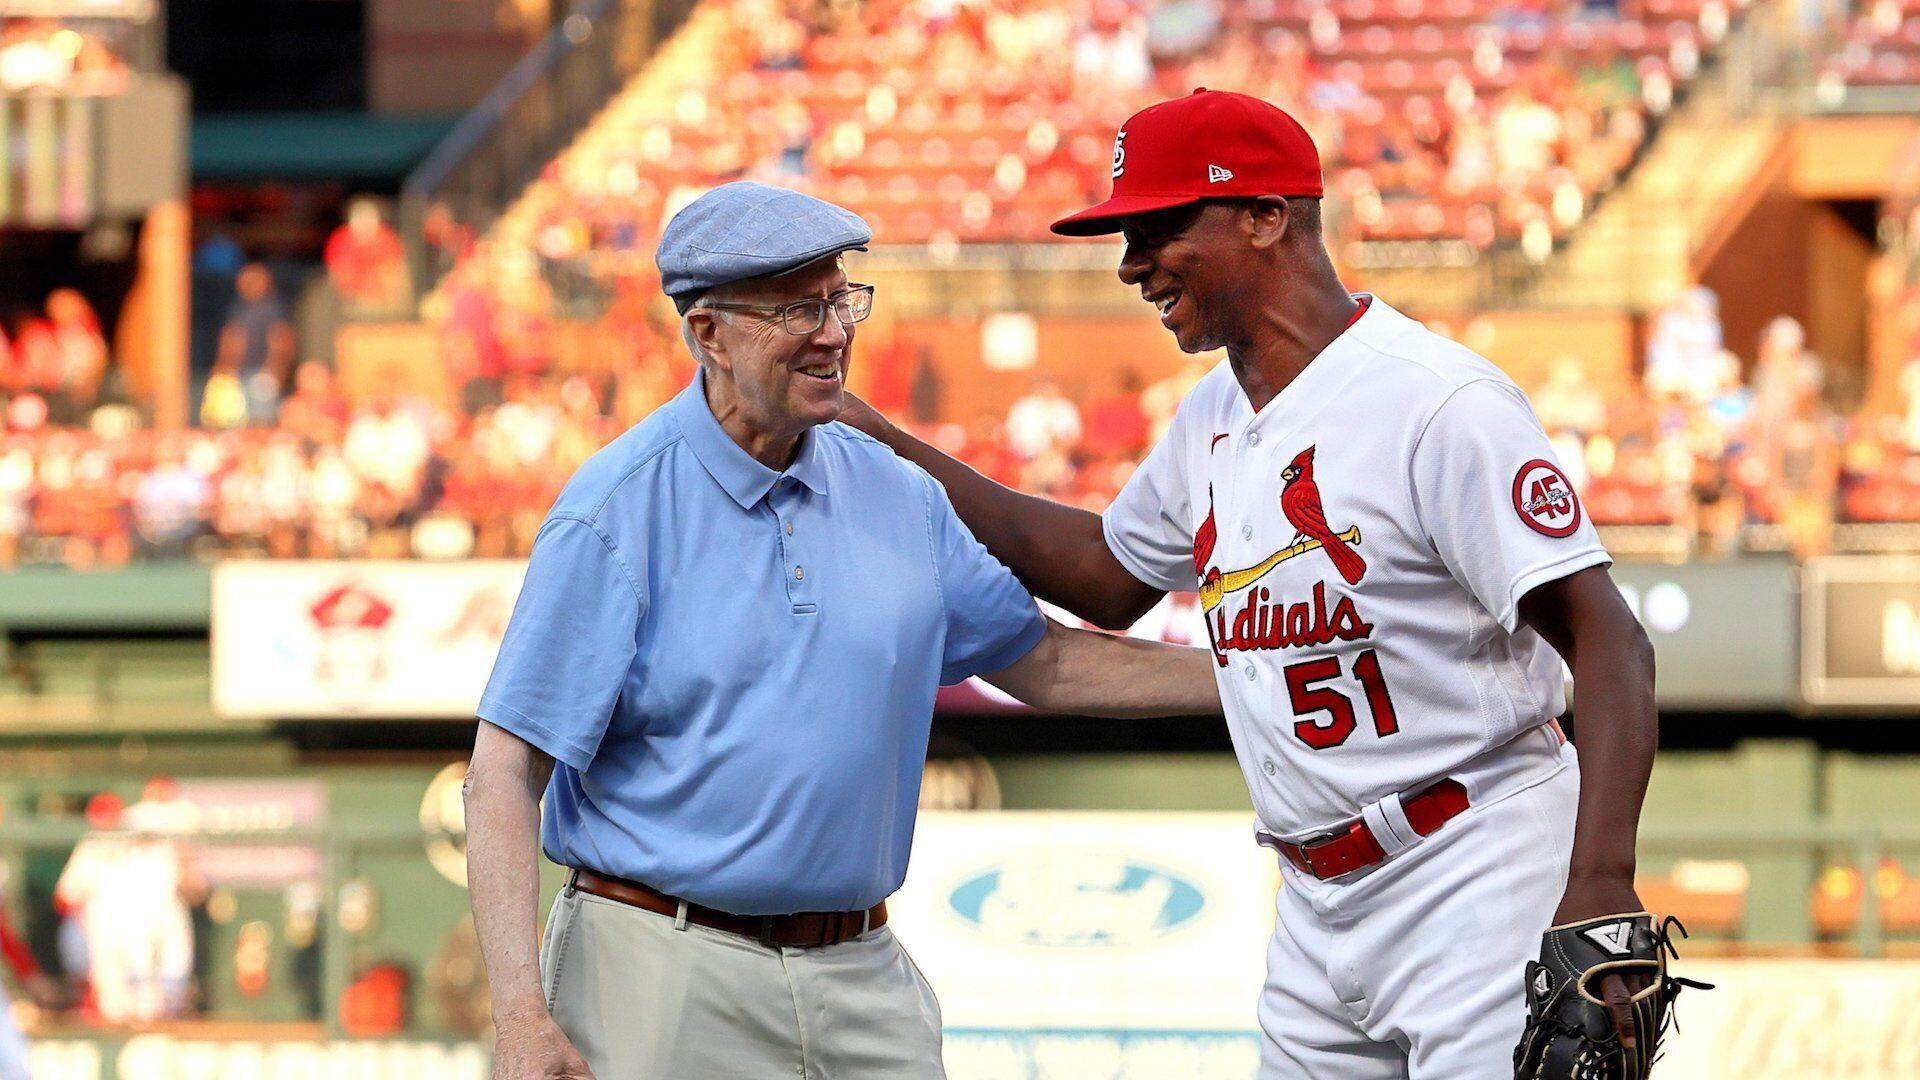 Omaha native and former St. Louis Cardinals baseball player Bob